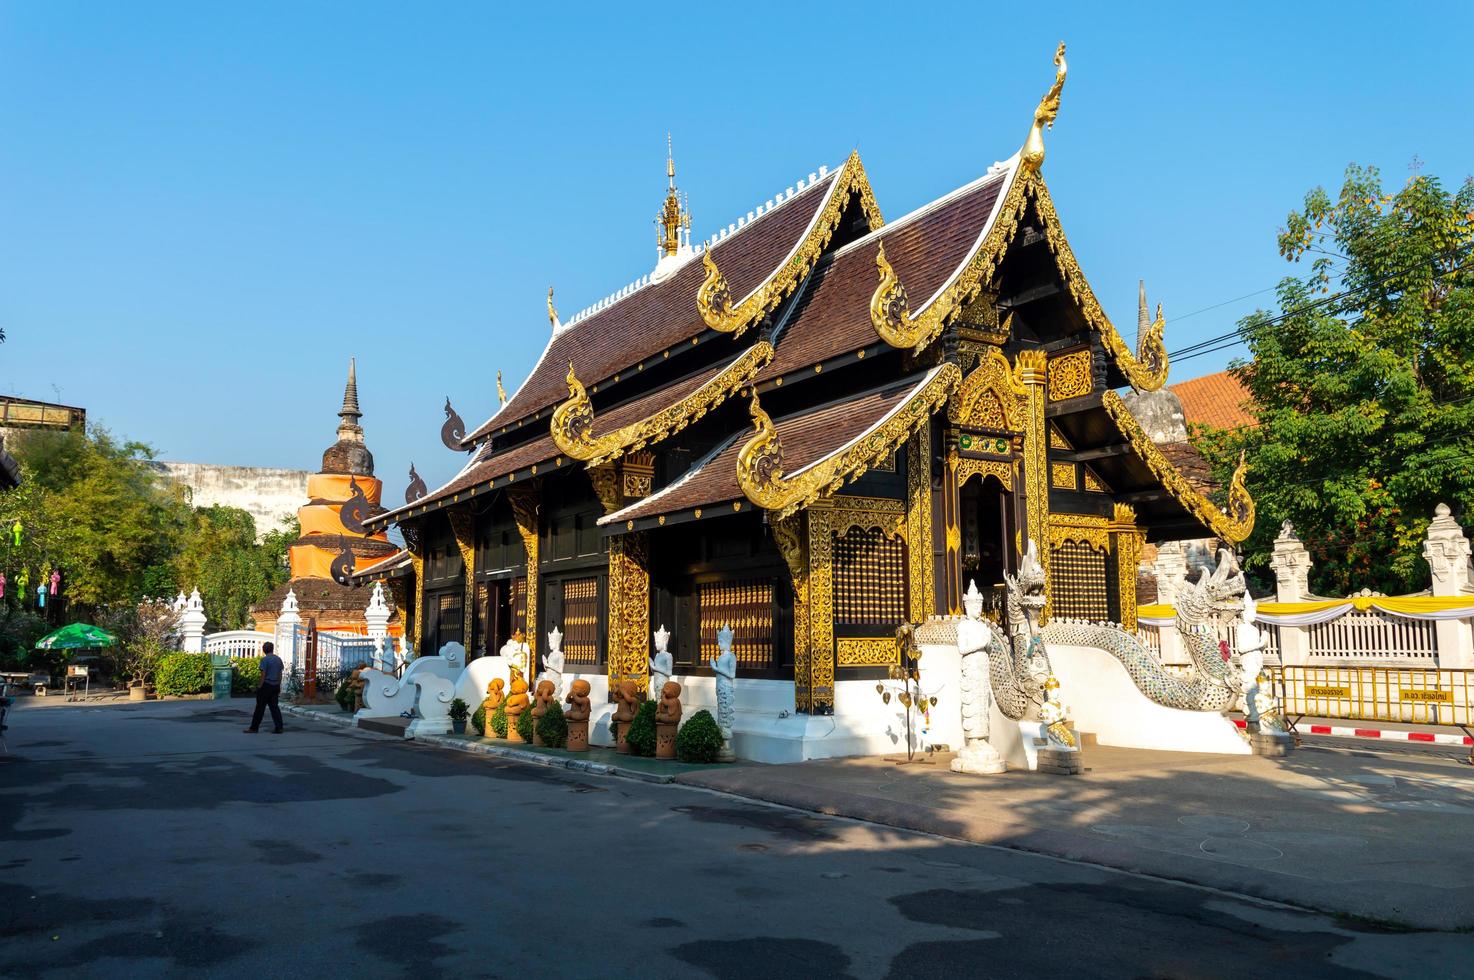 chiang mai thailand10 januari 2020 chiang mai stad pijler tempel. ging ervan uit dat de pagode de botten van phaya mangrai bevat. volgens de legende werd phaya mangrai op de markt door de bliksem getroffen. foto